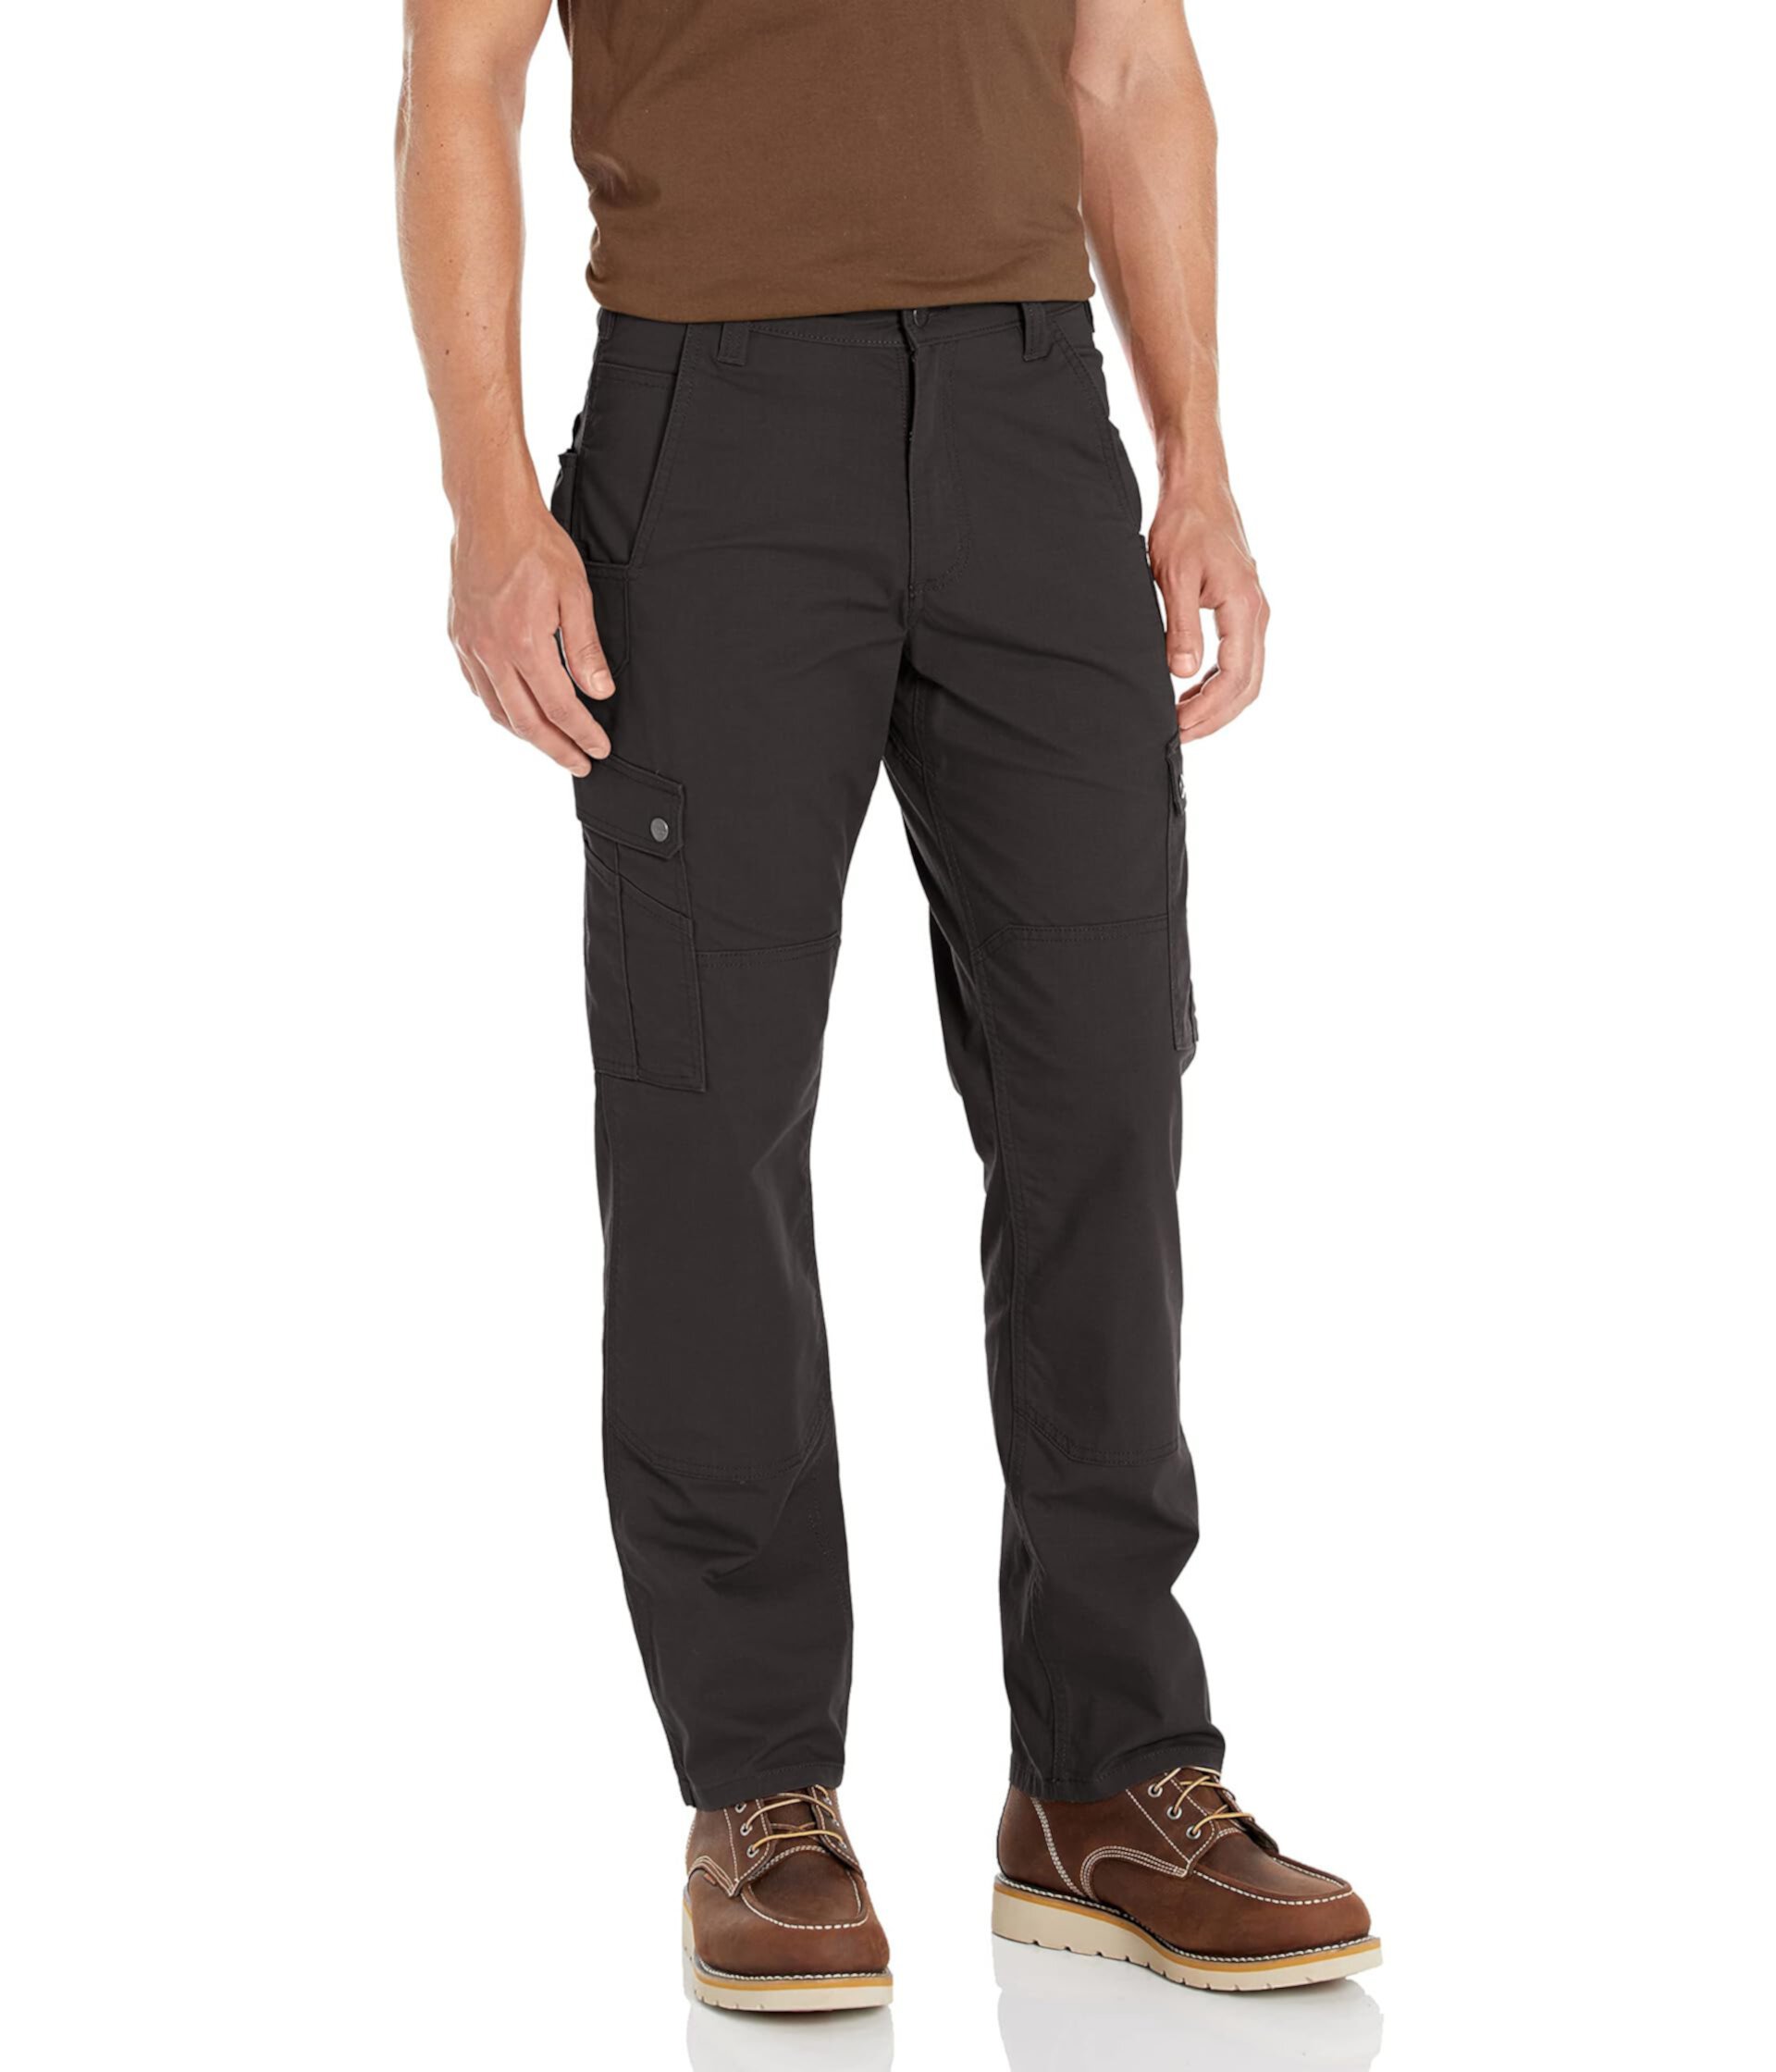 Рабочие брюки-карго Ripstop свободного покроя Rugged Flex® Carhartt